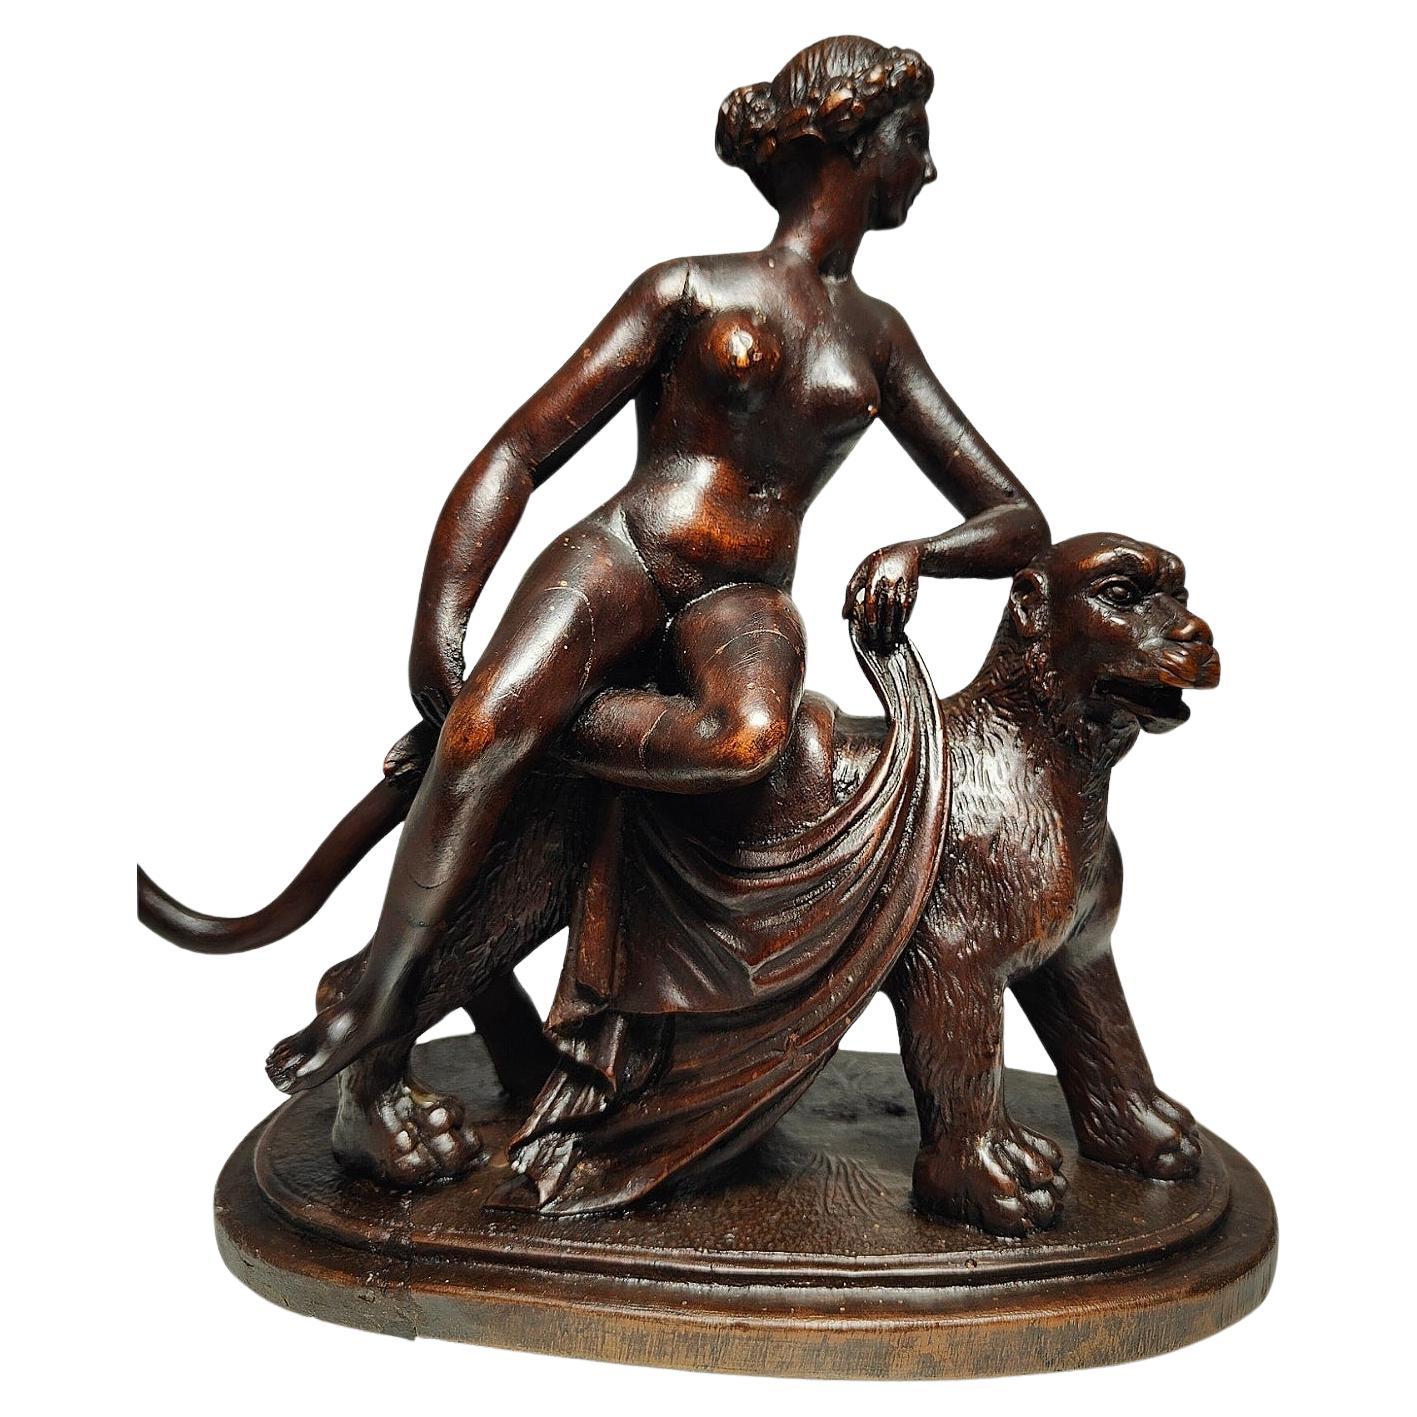 Sculpture by Johann Heinrich von Dannecker "Ariadne on the Panther"